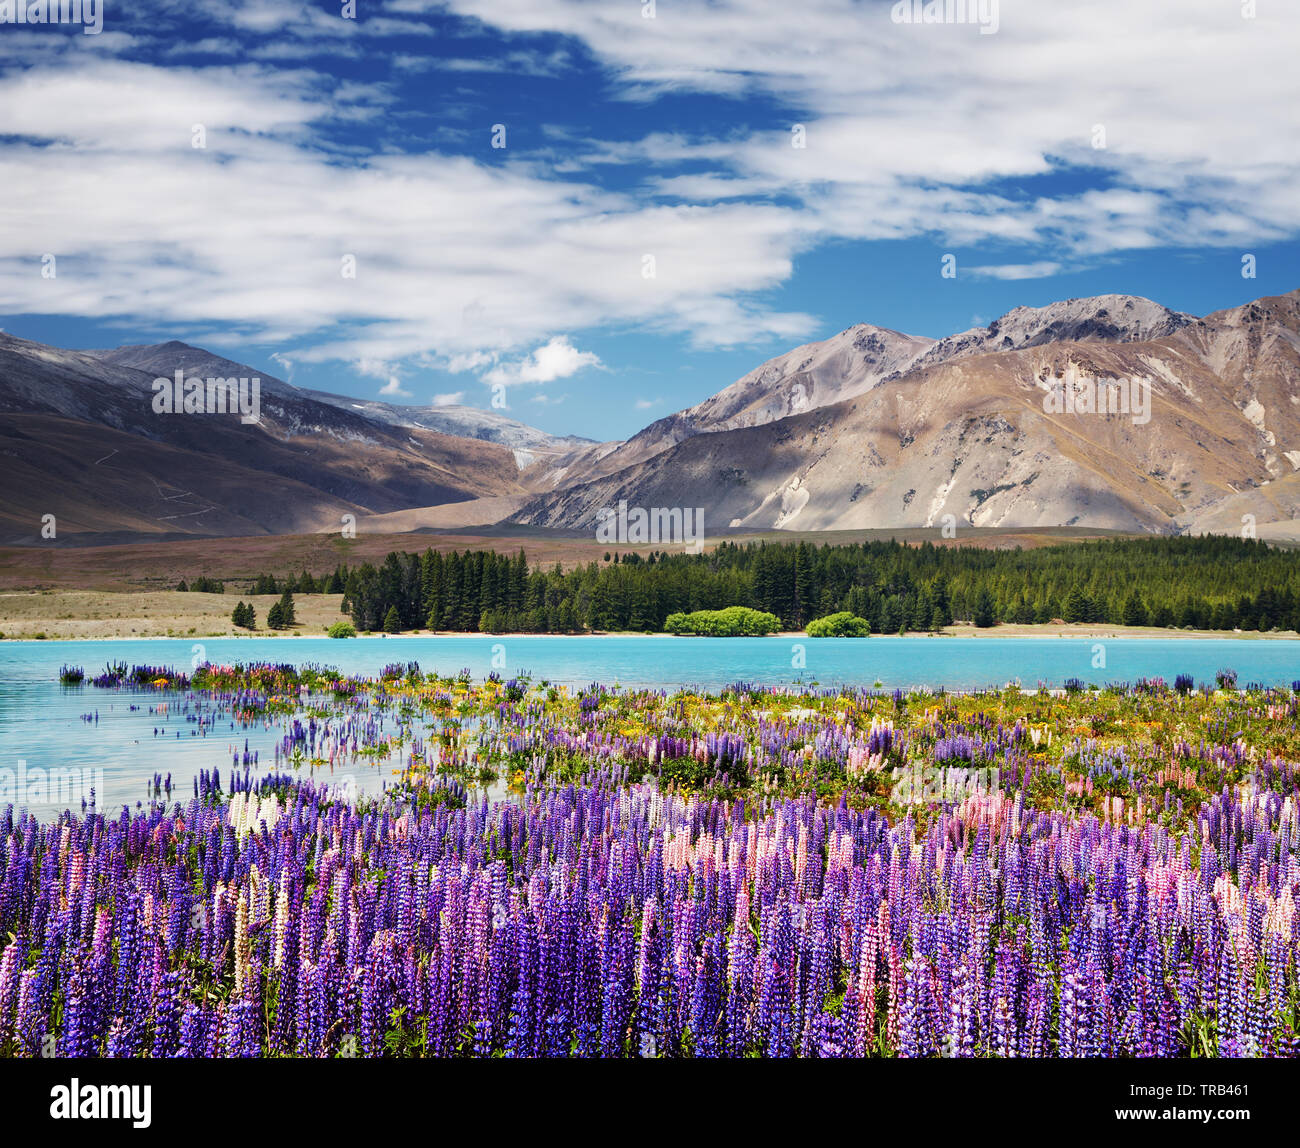 Mountain landscape with flowering lupins, lake Tekapo, New Zealand Stock Photo